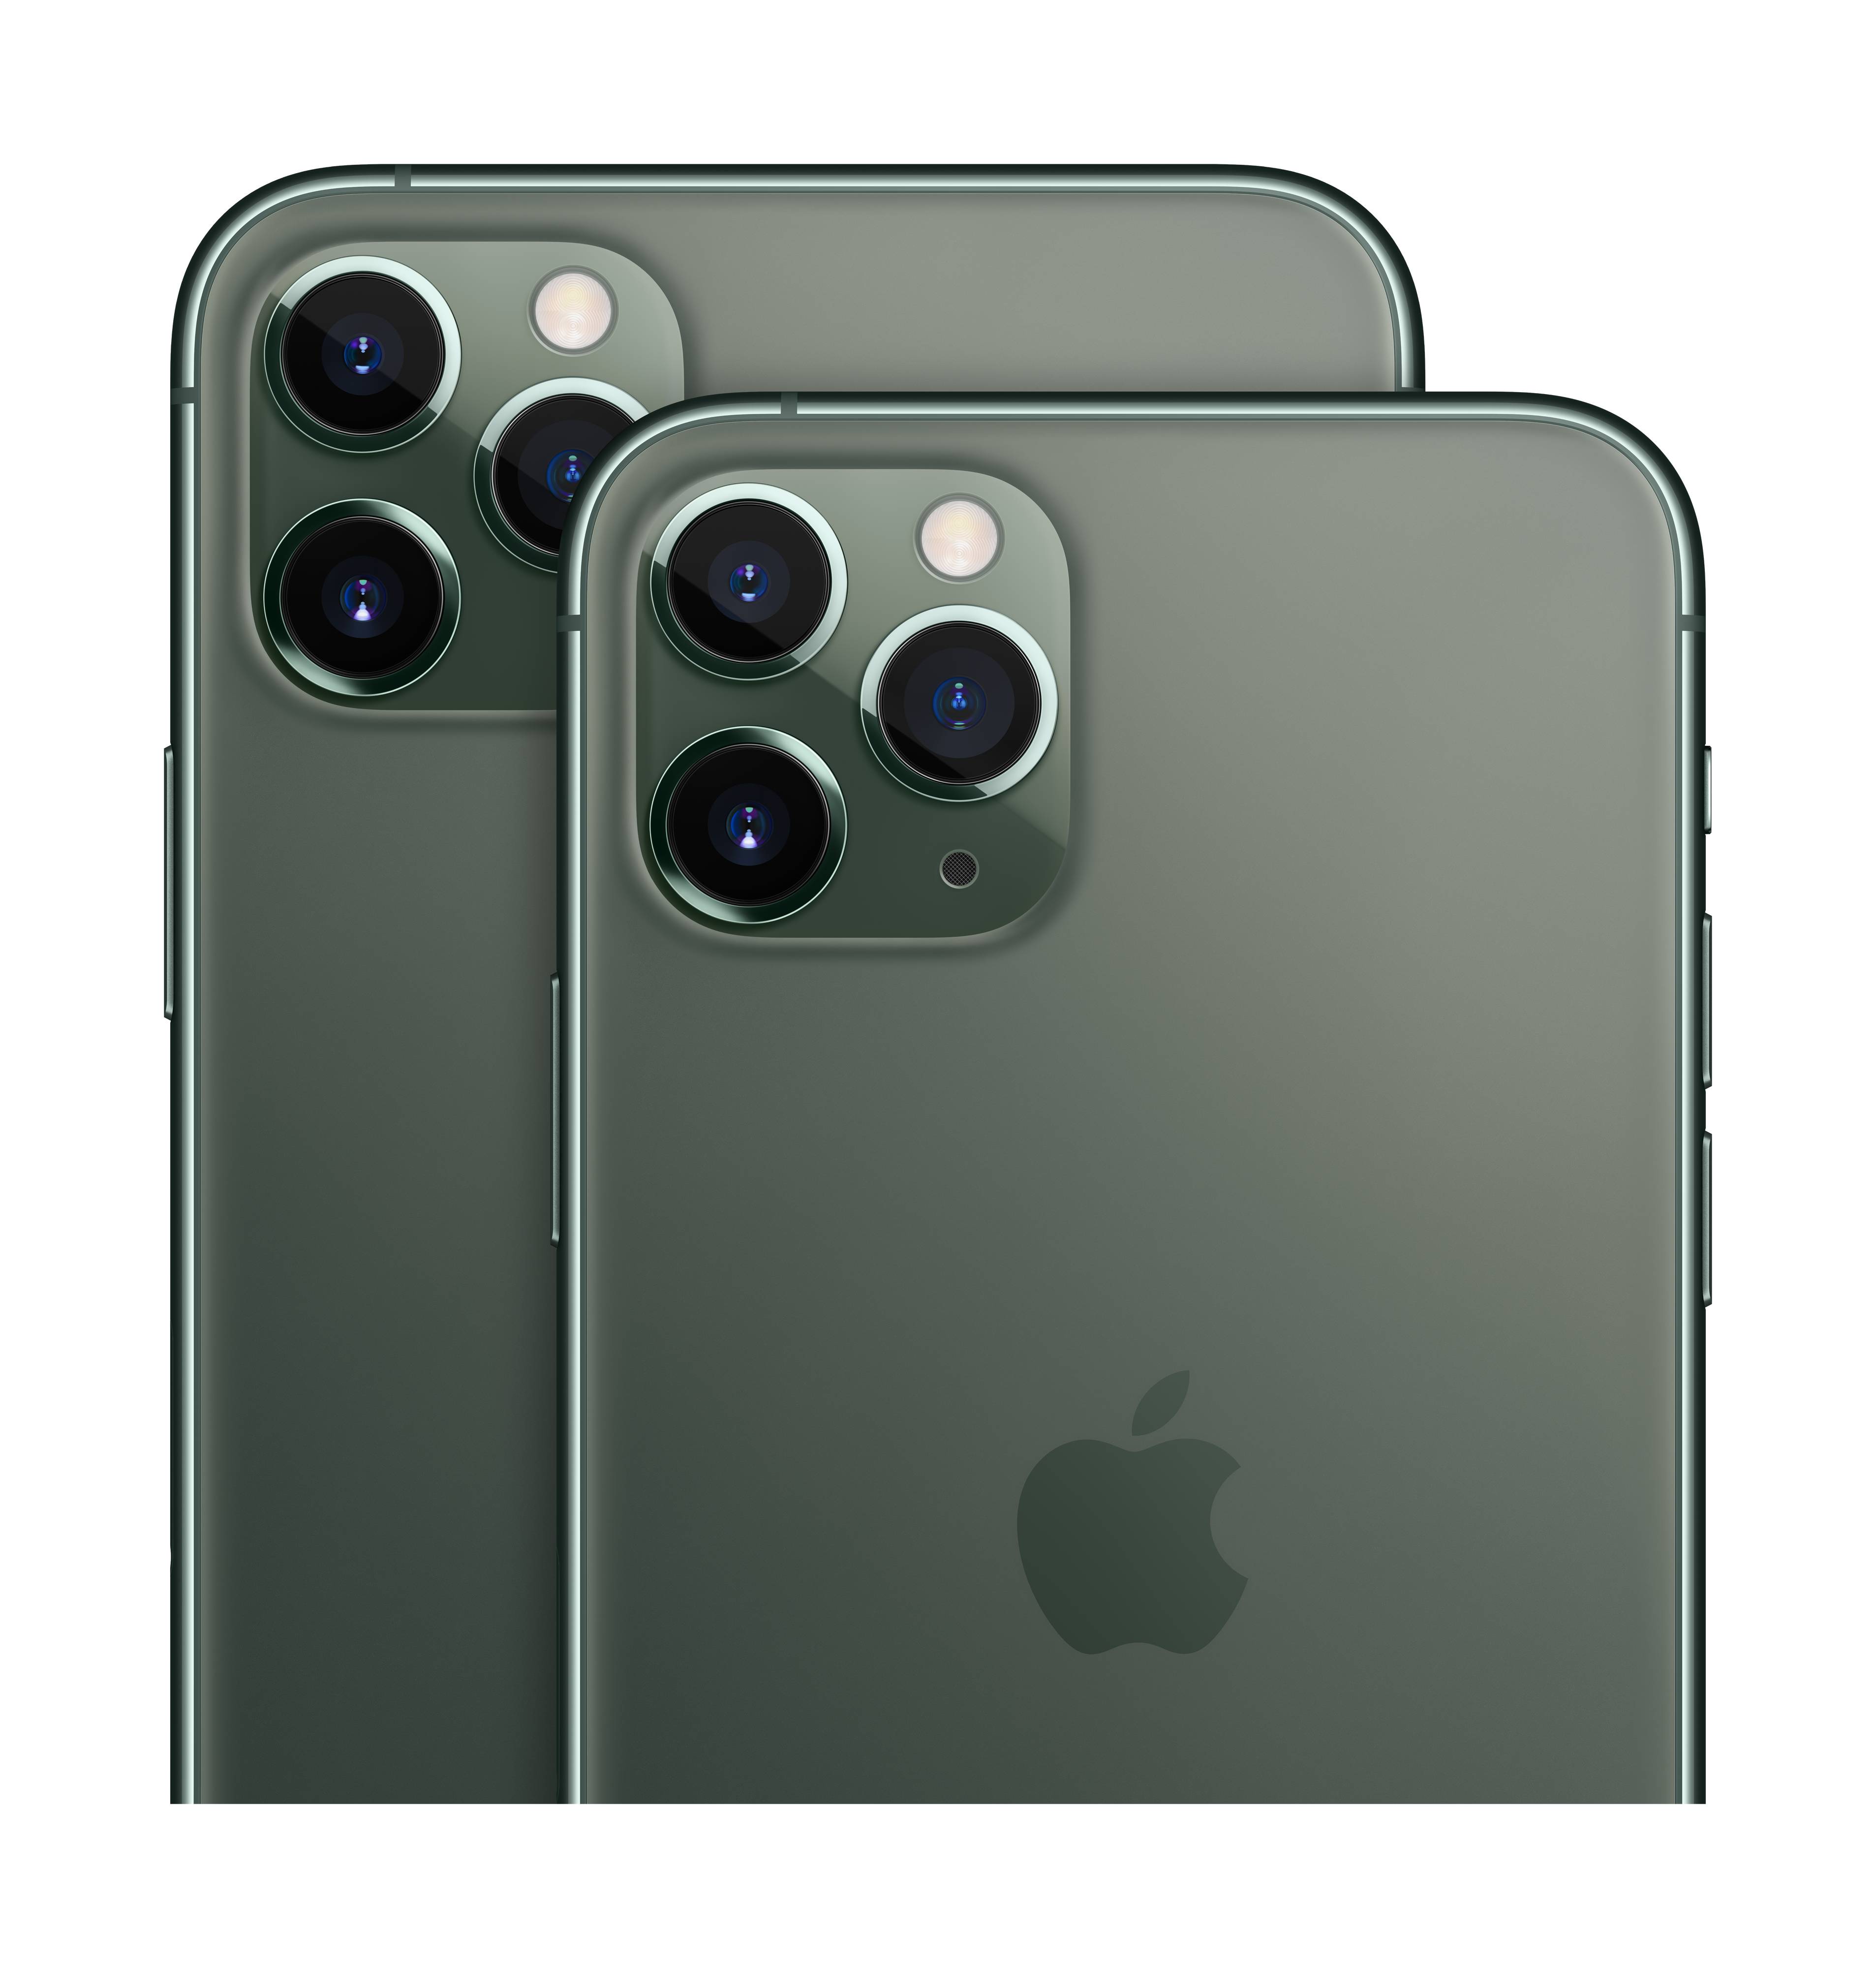 camera plus pro app ios 11